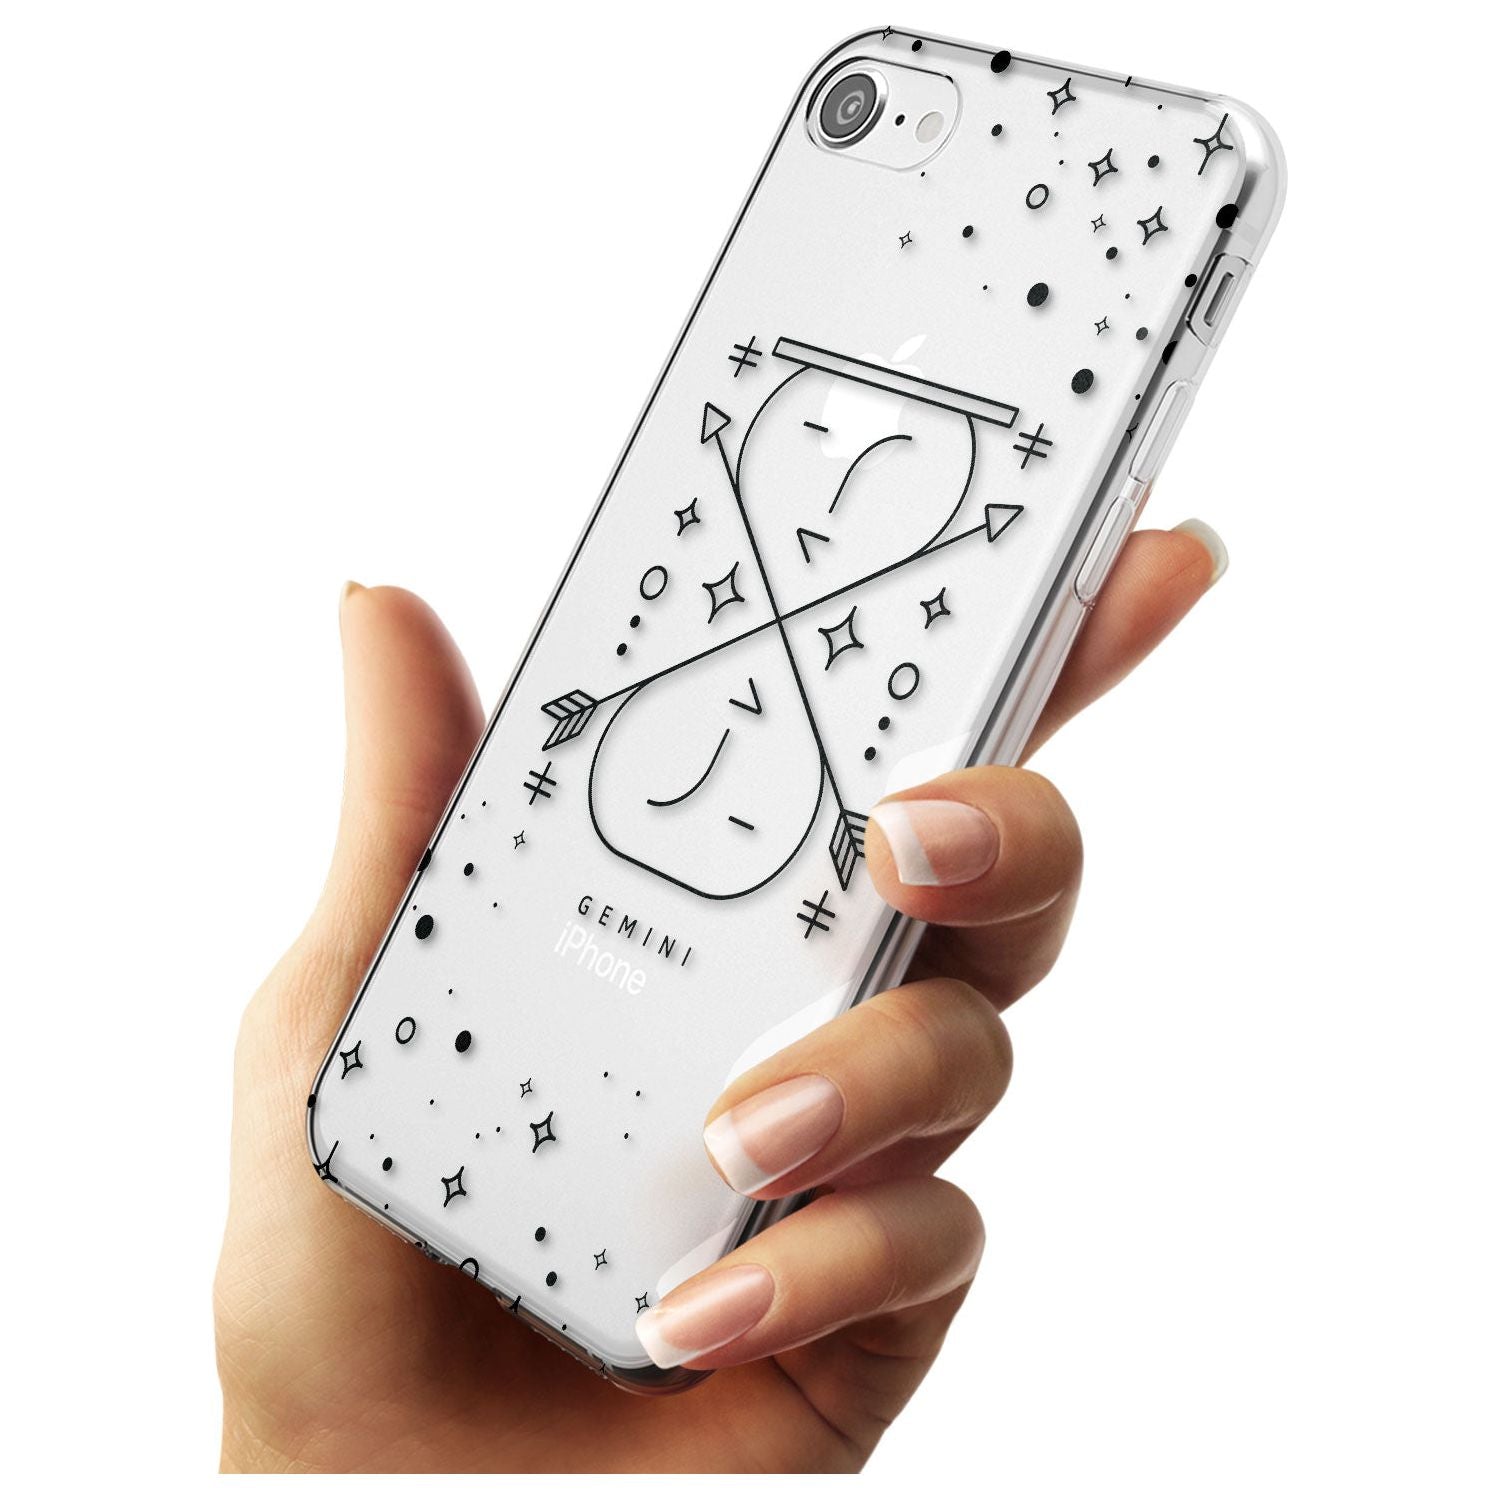 Gemini Emblem - Transparent Design Slim TPU Phone Case for iPhone SE 8 7 Plus